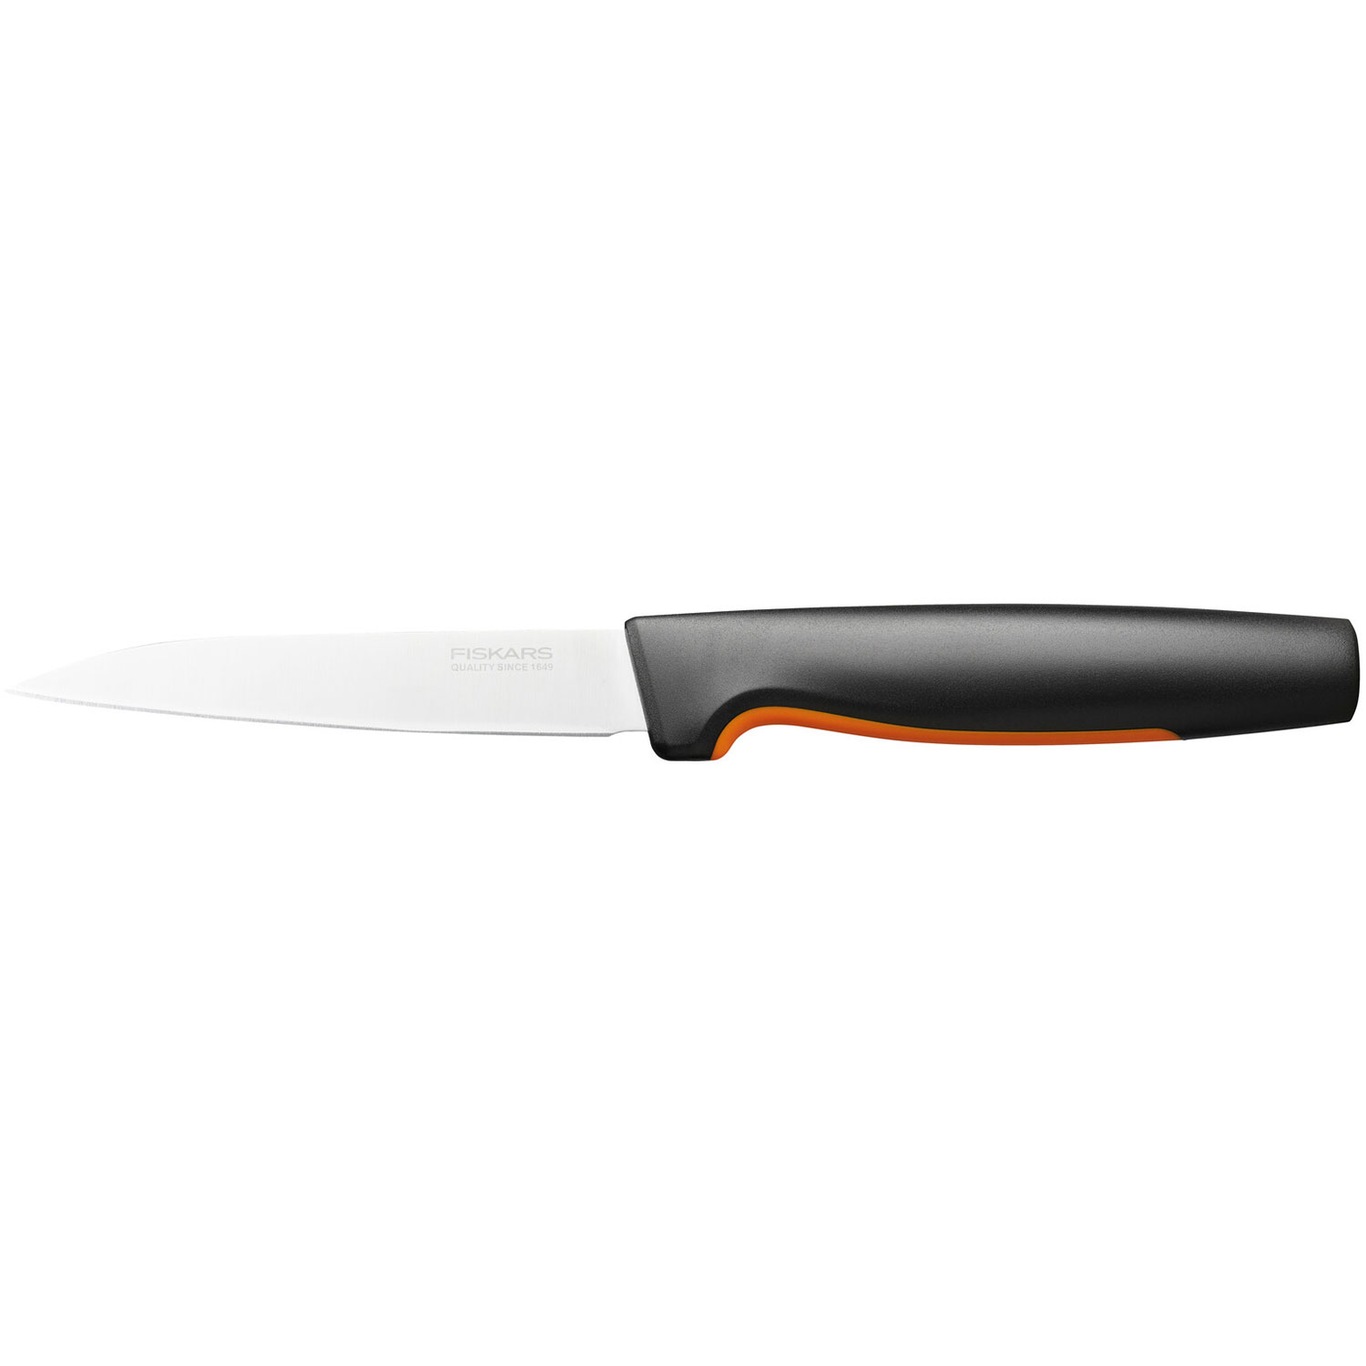 피스카스 Functional Form VEGE테이블 칼 11 cm Fiskars Functional Form Vegetable Knife  11 cm 06025